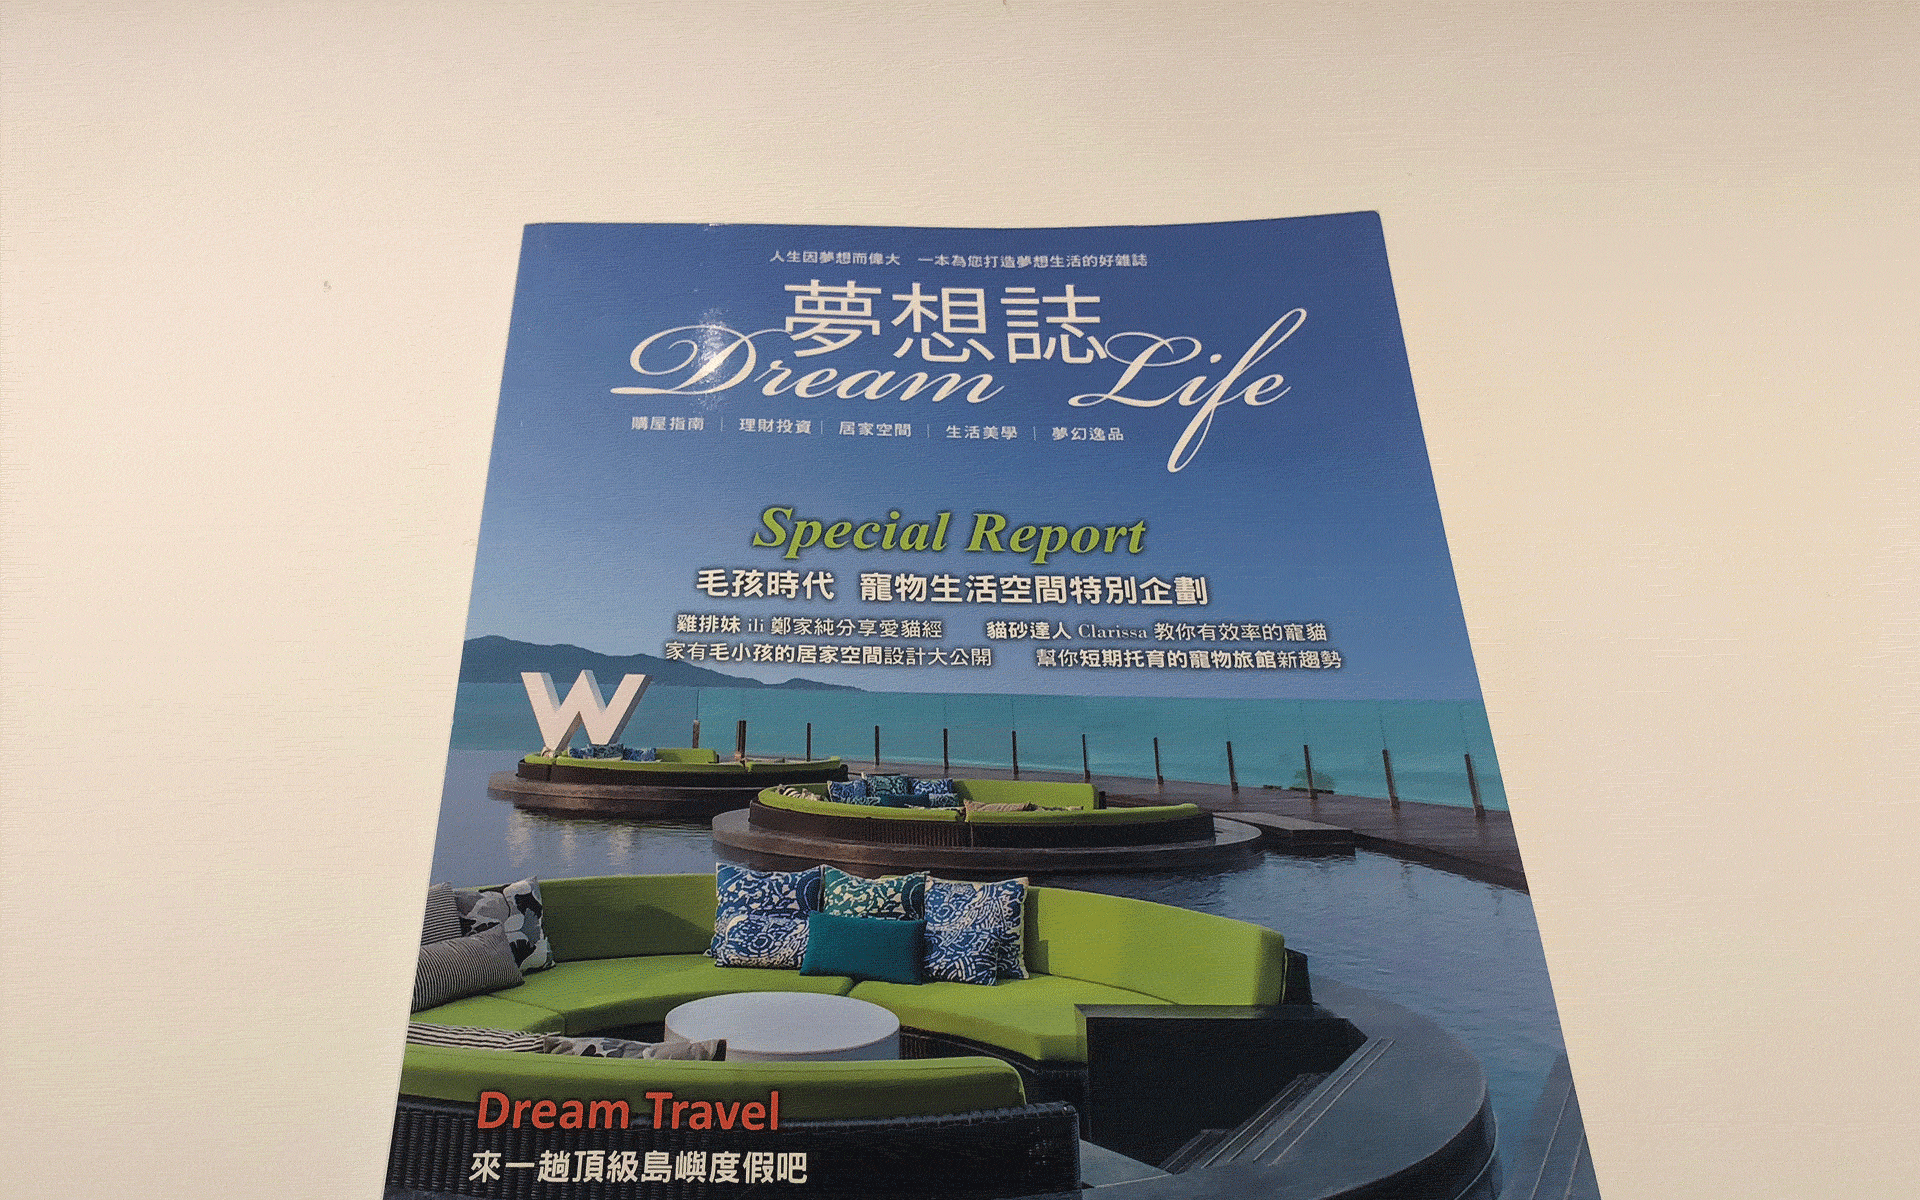 2016│夢想誌 Dream life no.10